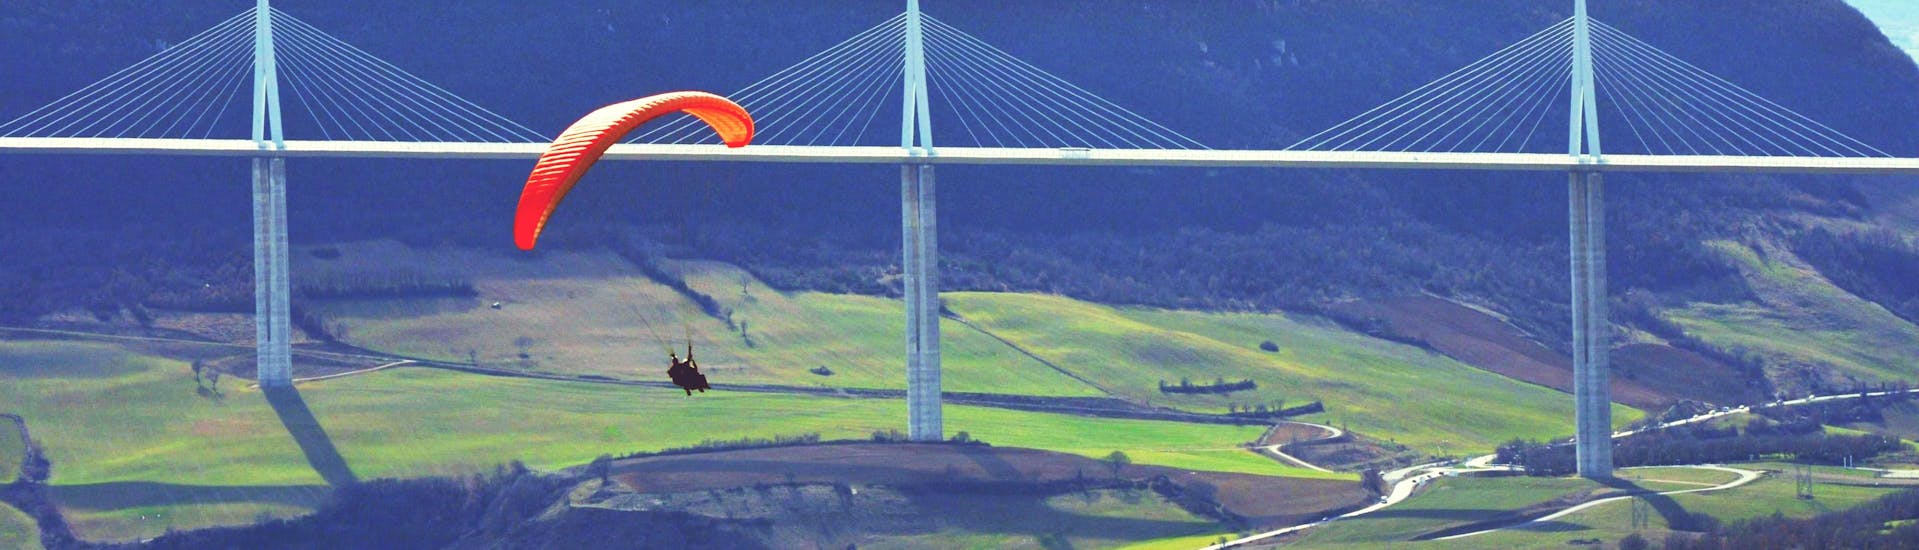 Akrobatik Tandem Paragliding in Millau (ab 12 J.) - Parc naturel régional des Grands Causses.